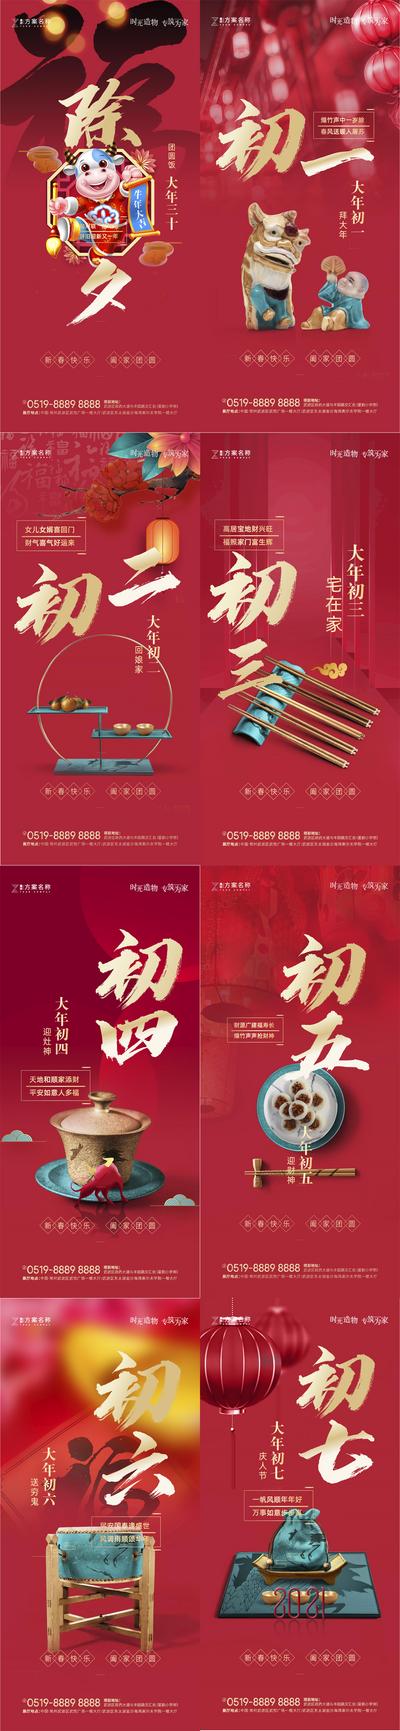 南门网 海报 房地产 中国传统节日 春节 除夕 过年 年俗 插画 系列